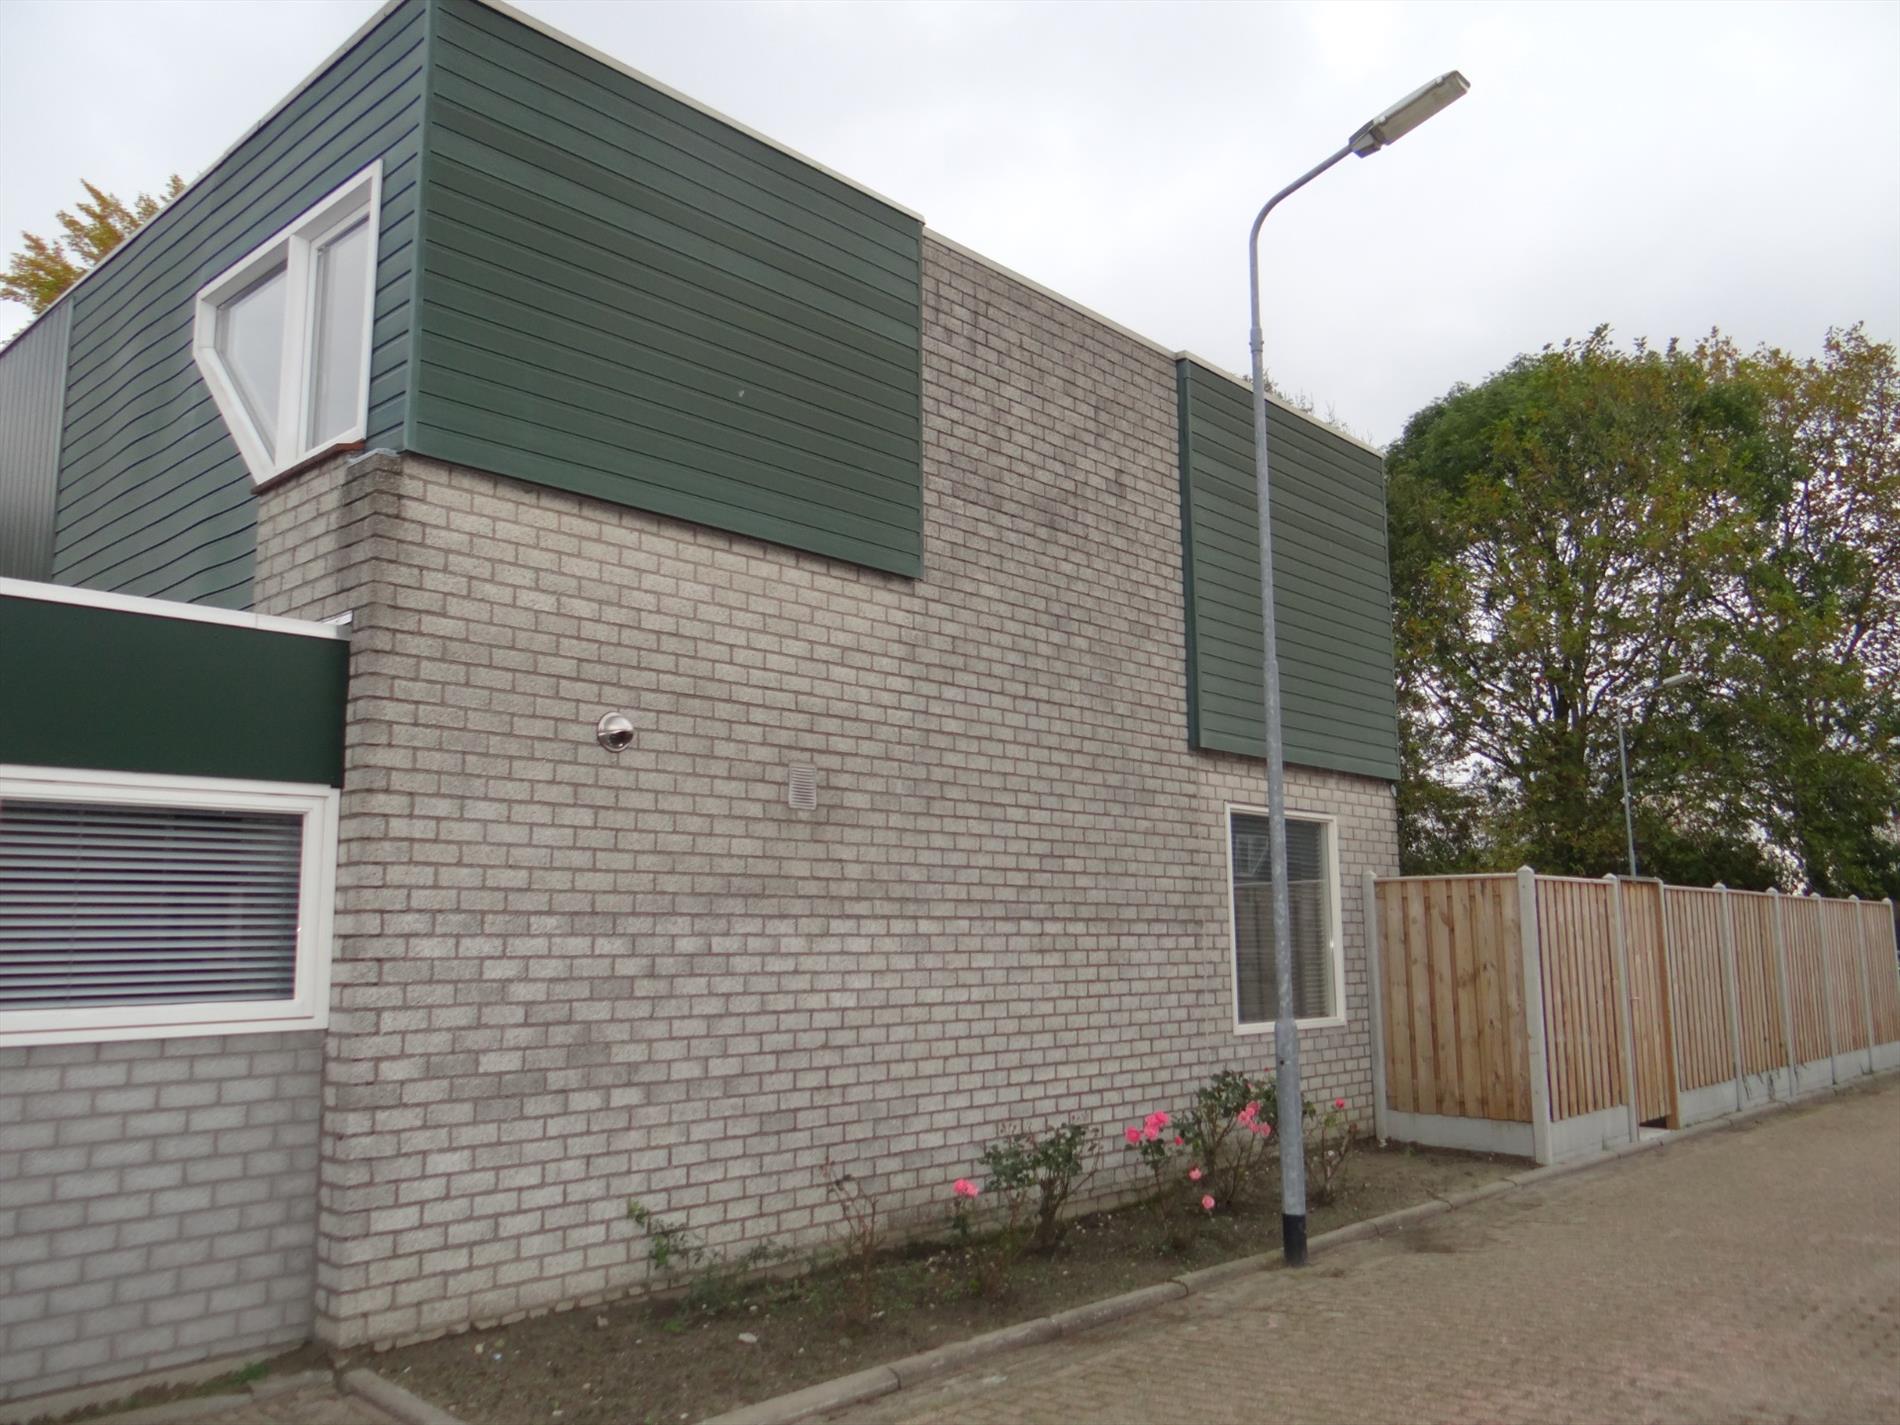 In de gewilde Magistraatwijk van Middelburg bieden wij deze uitstekend gerenoveerde hoekwoning met mooi aangelegde achtertuin aan. 